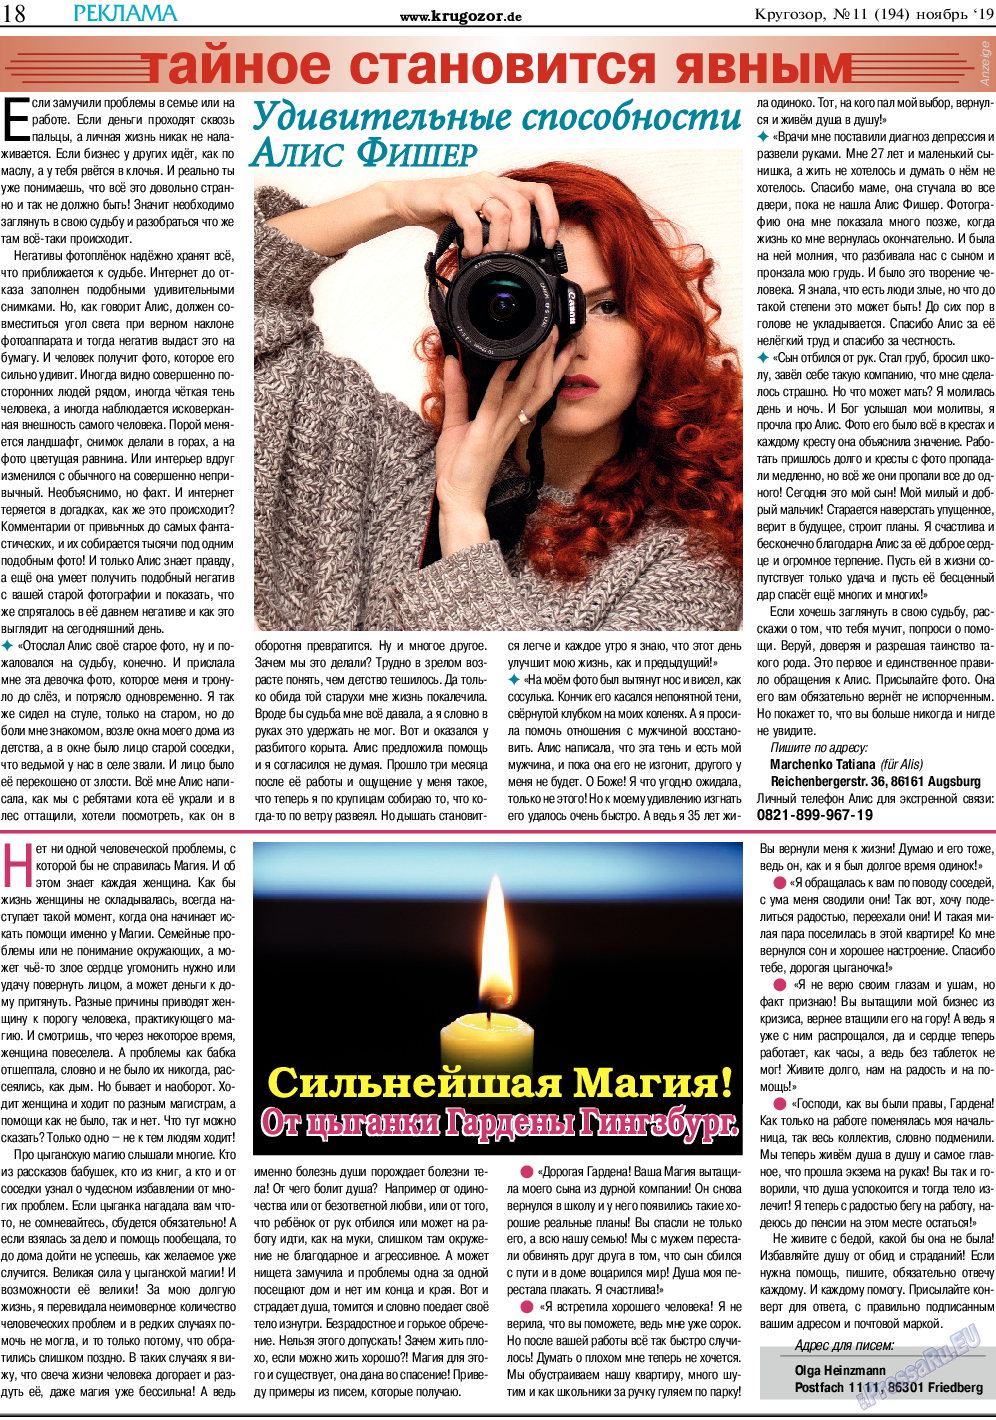 Кругозор, газета. 2019 №11 стр.18